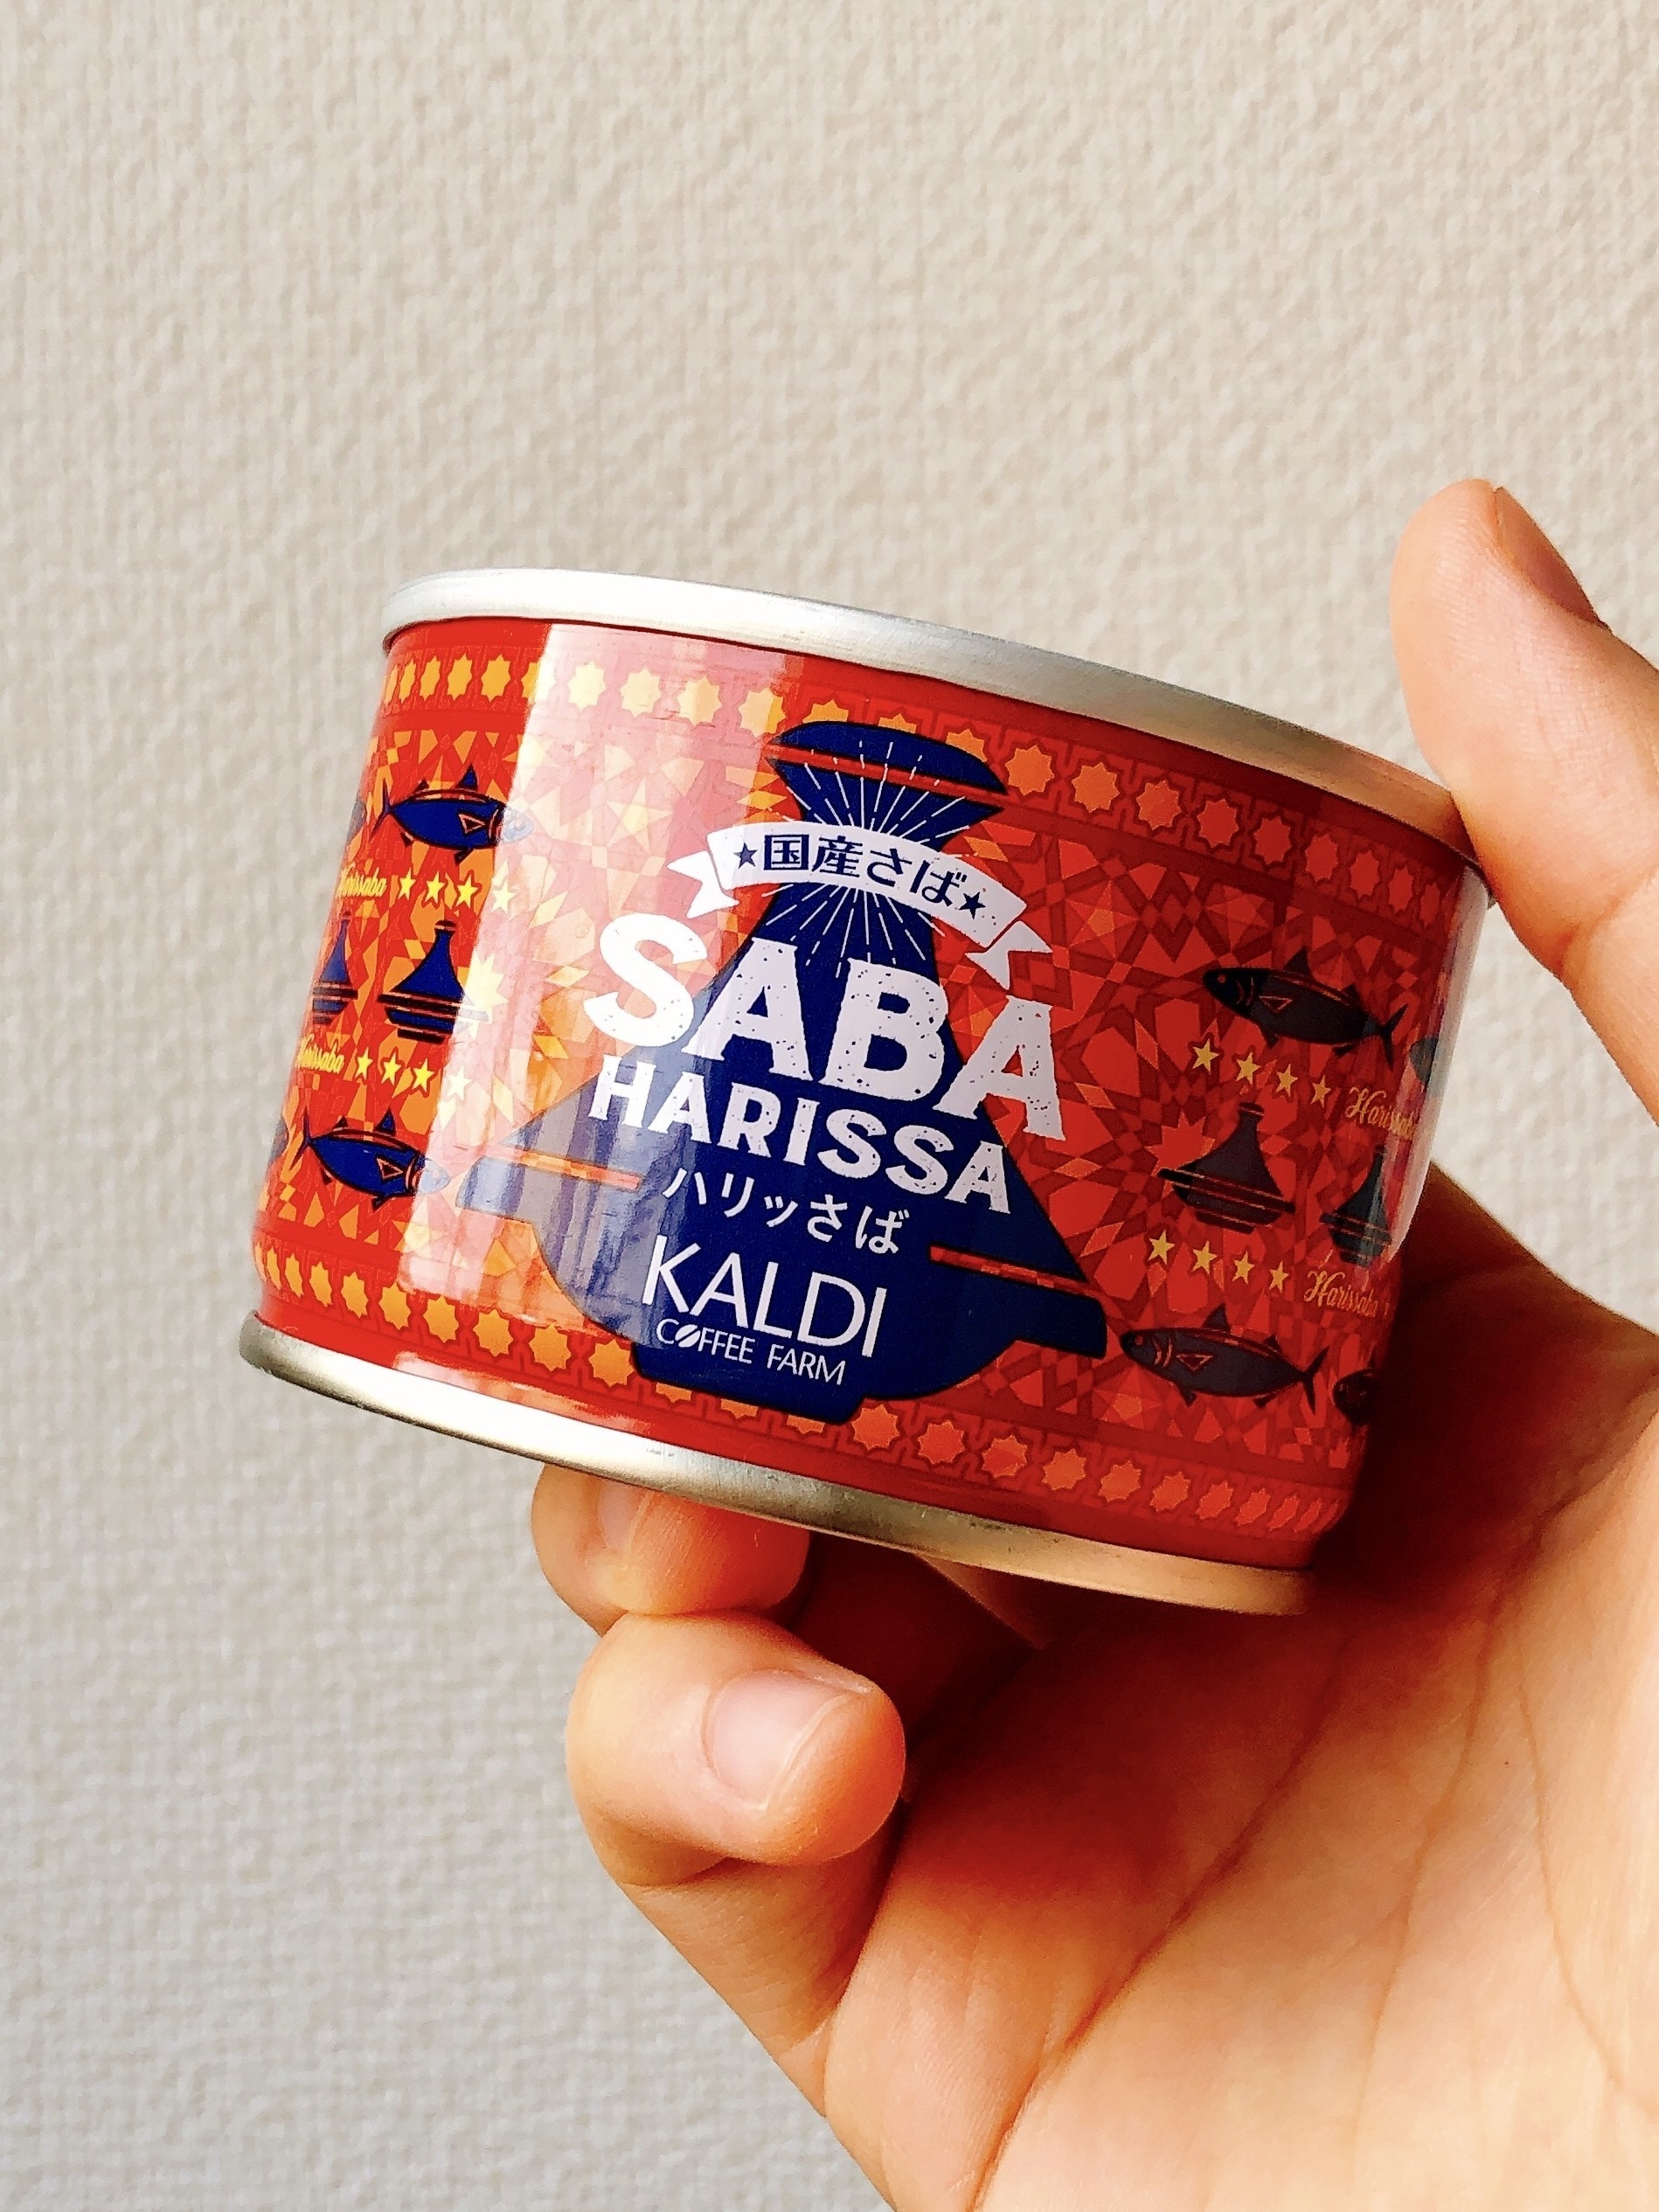 ★KALDI（カルディ）のおすすめサバ缶「ハリッさば」カレーにアレンジするとおいしい